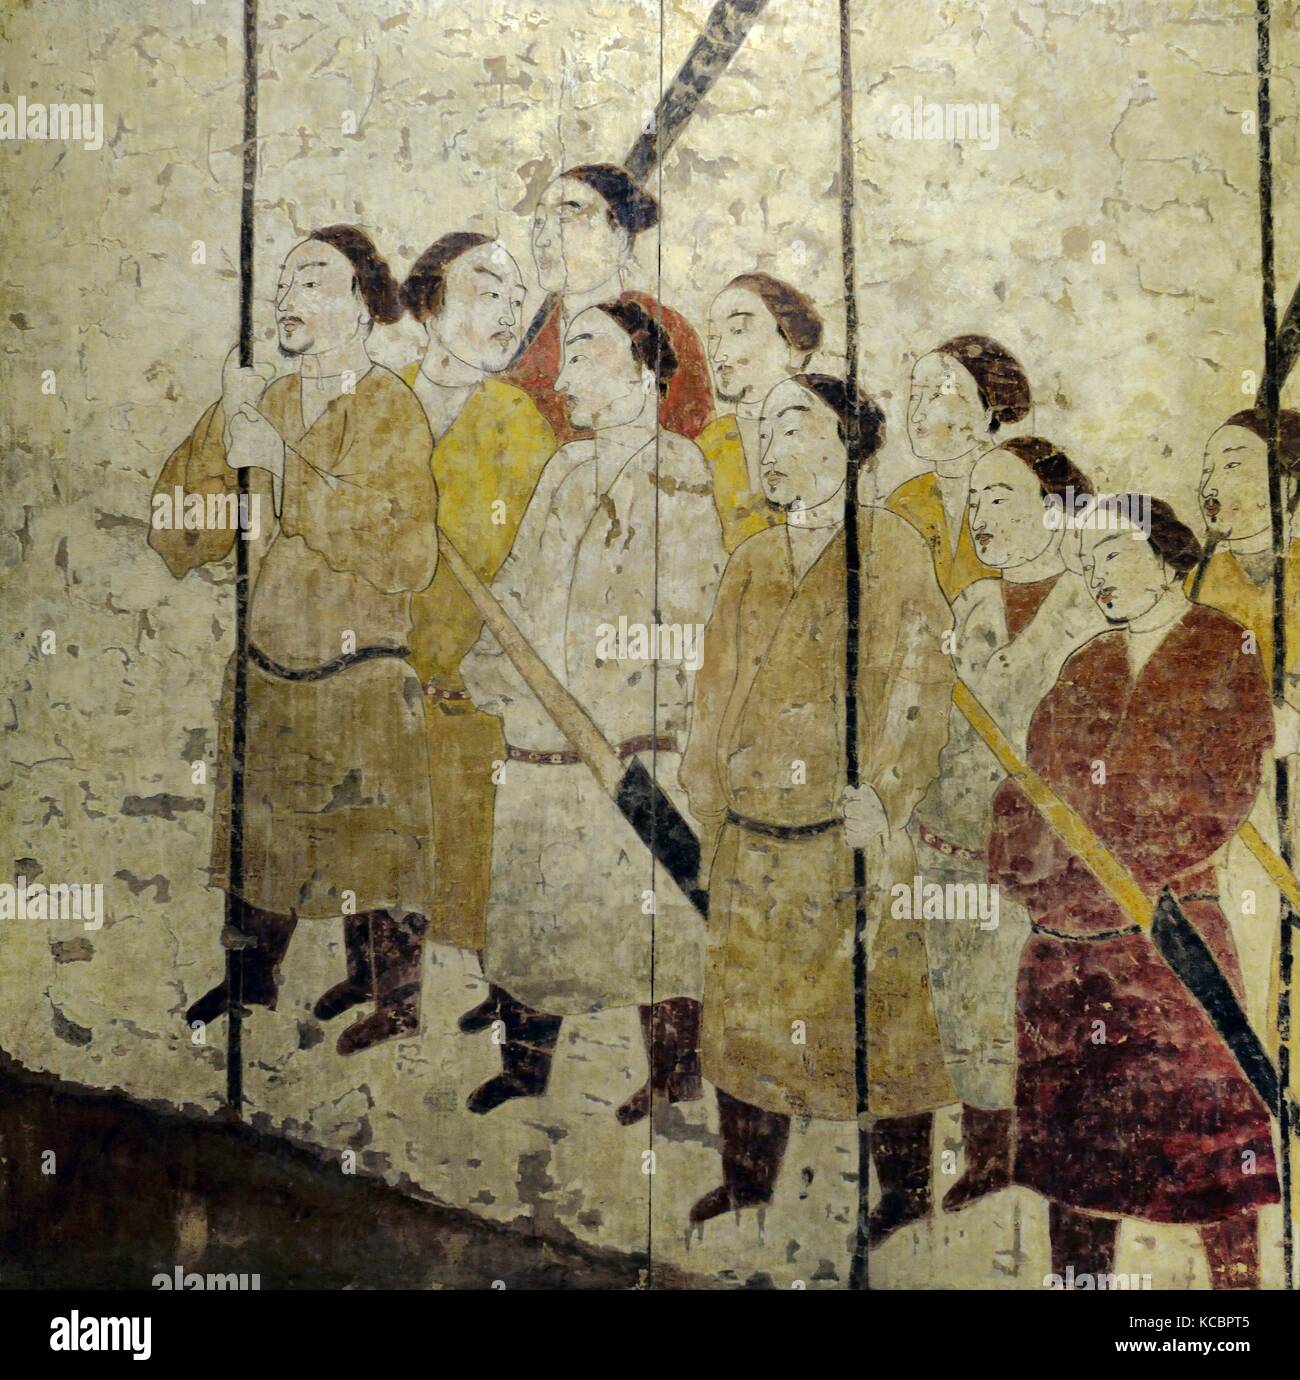 La peinture murale antique de la garde d'honneur. Détail. Qi du nord dynastie. De la tombe de Xu Xianxiu à Wangjiafeng, Taiyuan City, Shanxi, Chine Banque D'Images